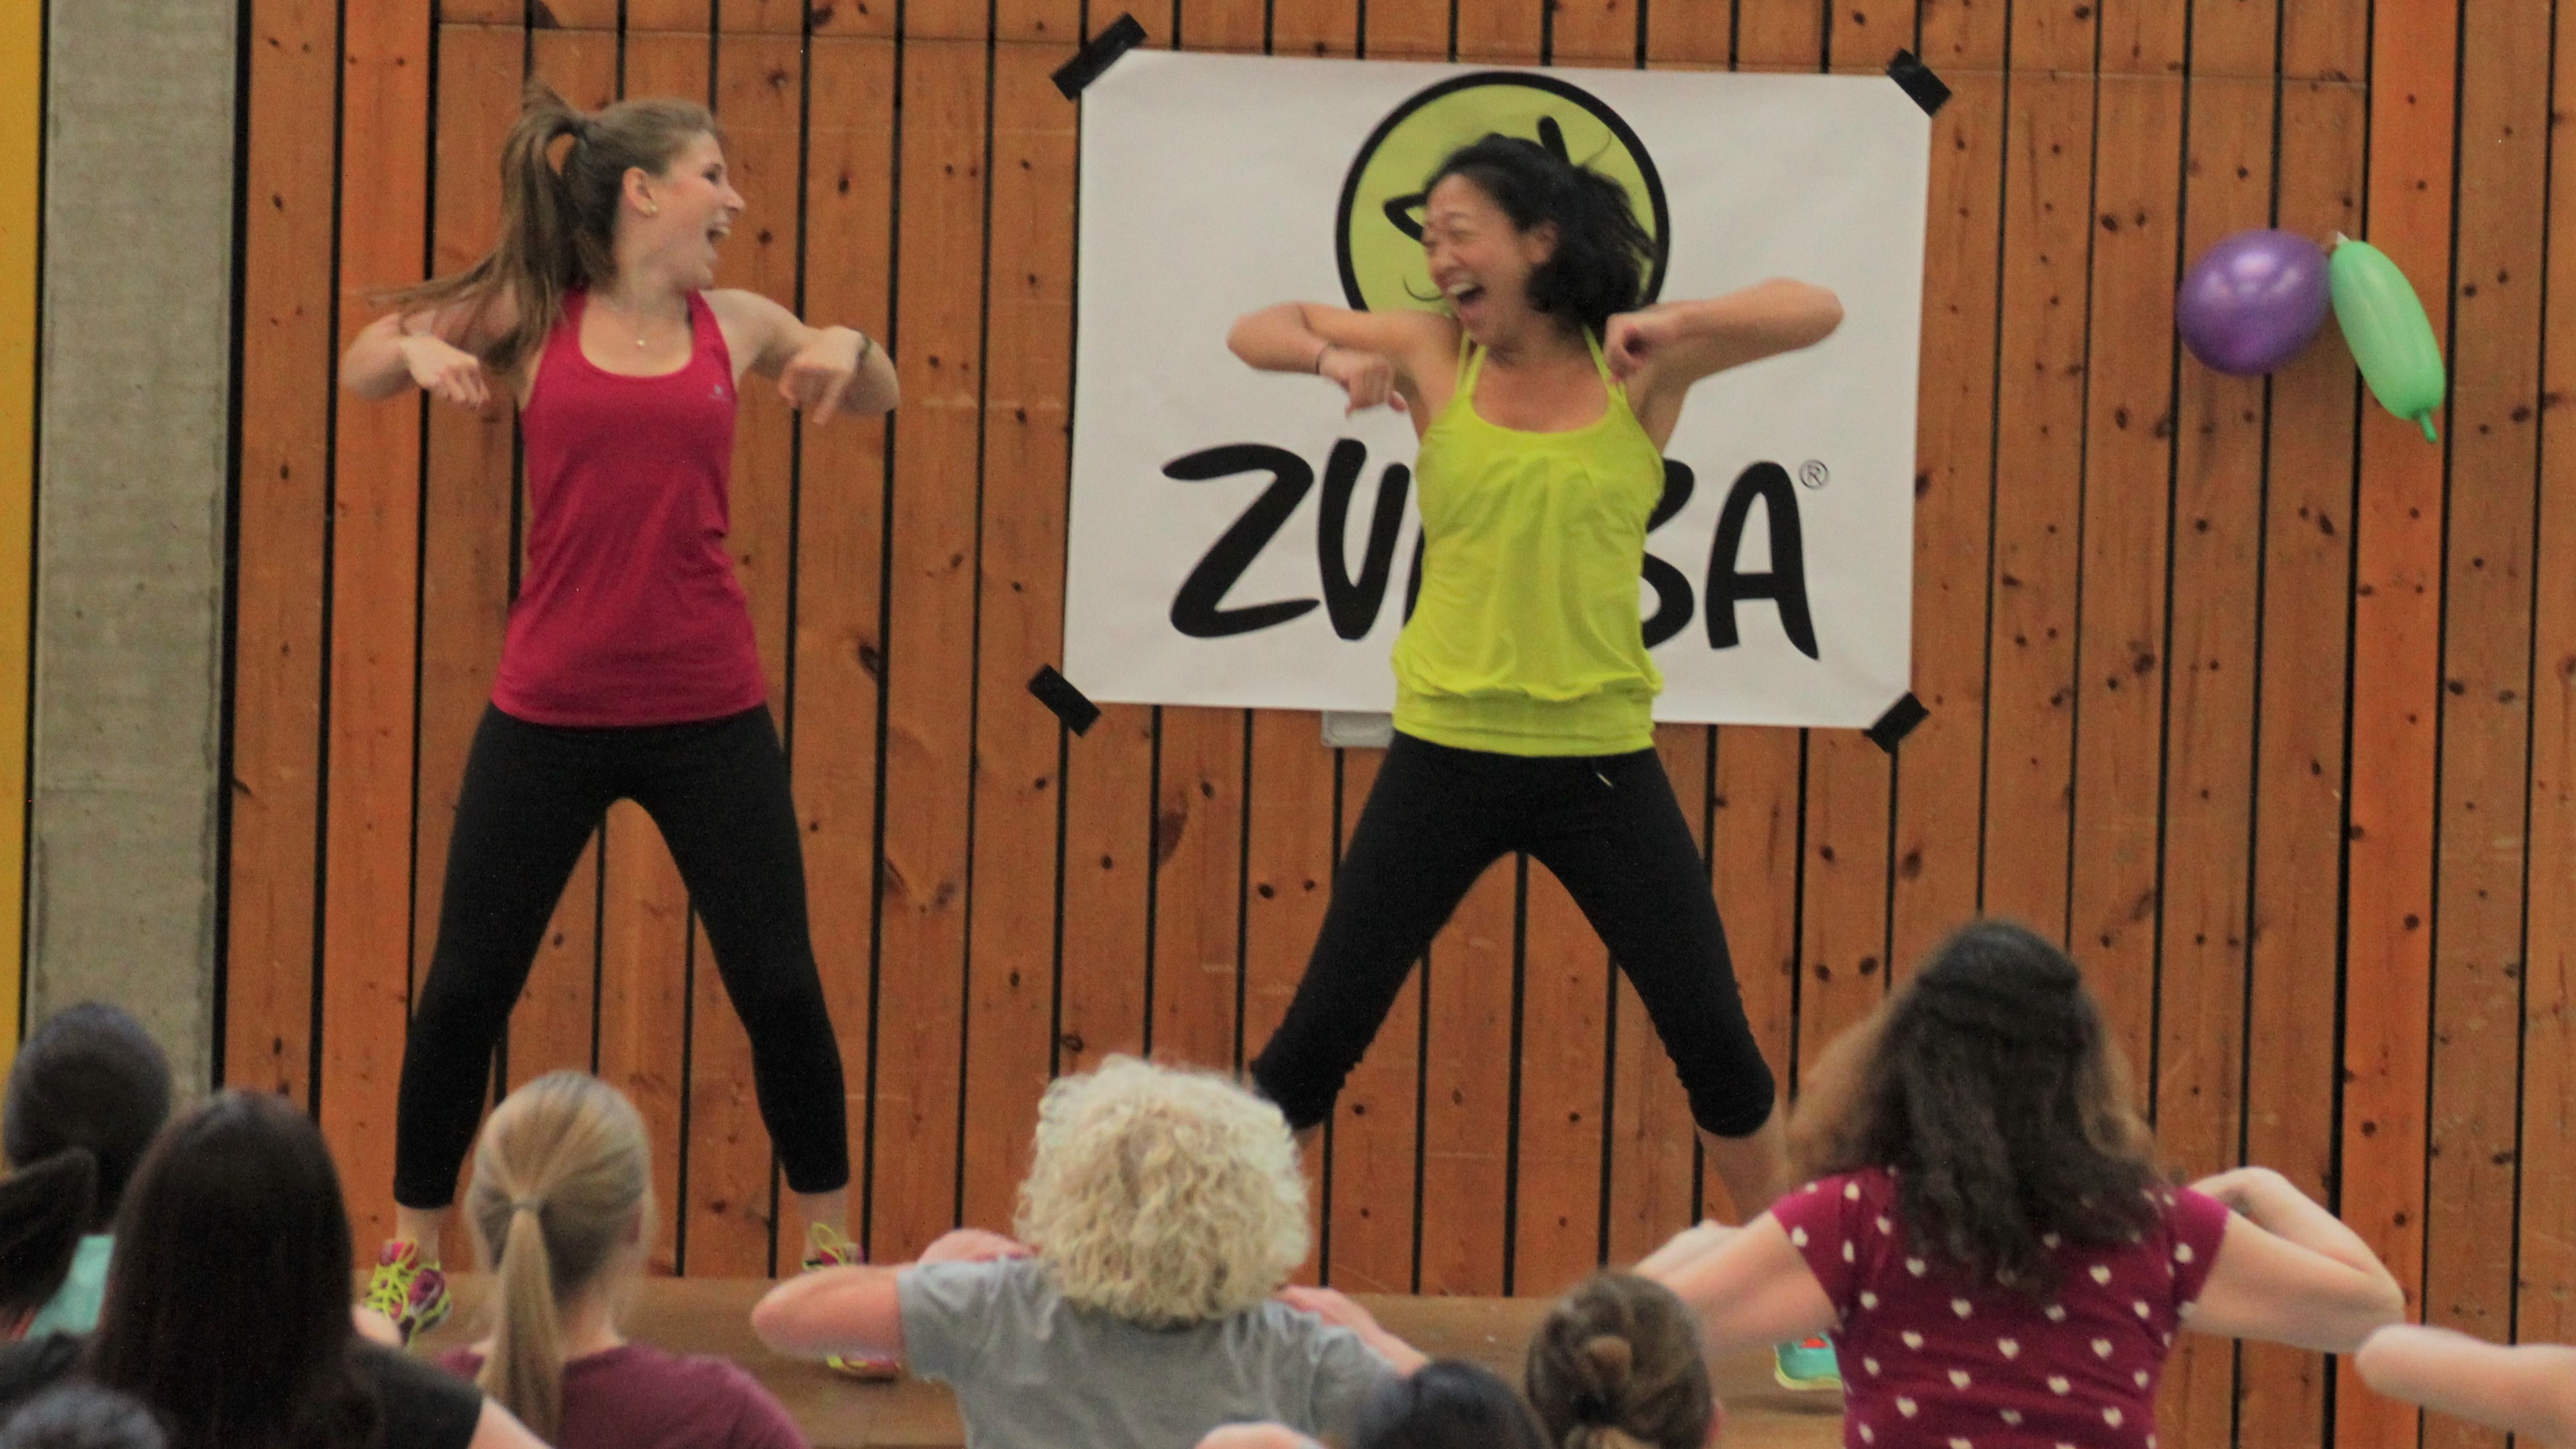 [Translate to Englisch:] Über eine Publikumsmenge auf zwei tanzende Zumba-Übungsleiterinnen schauend